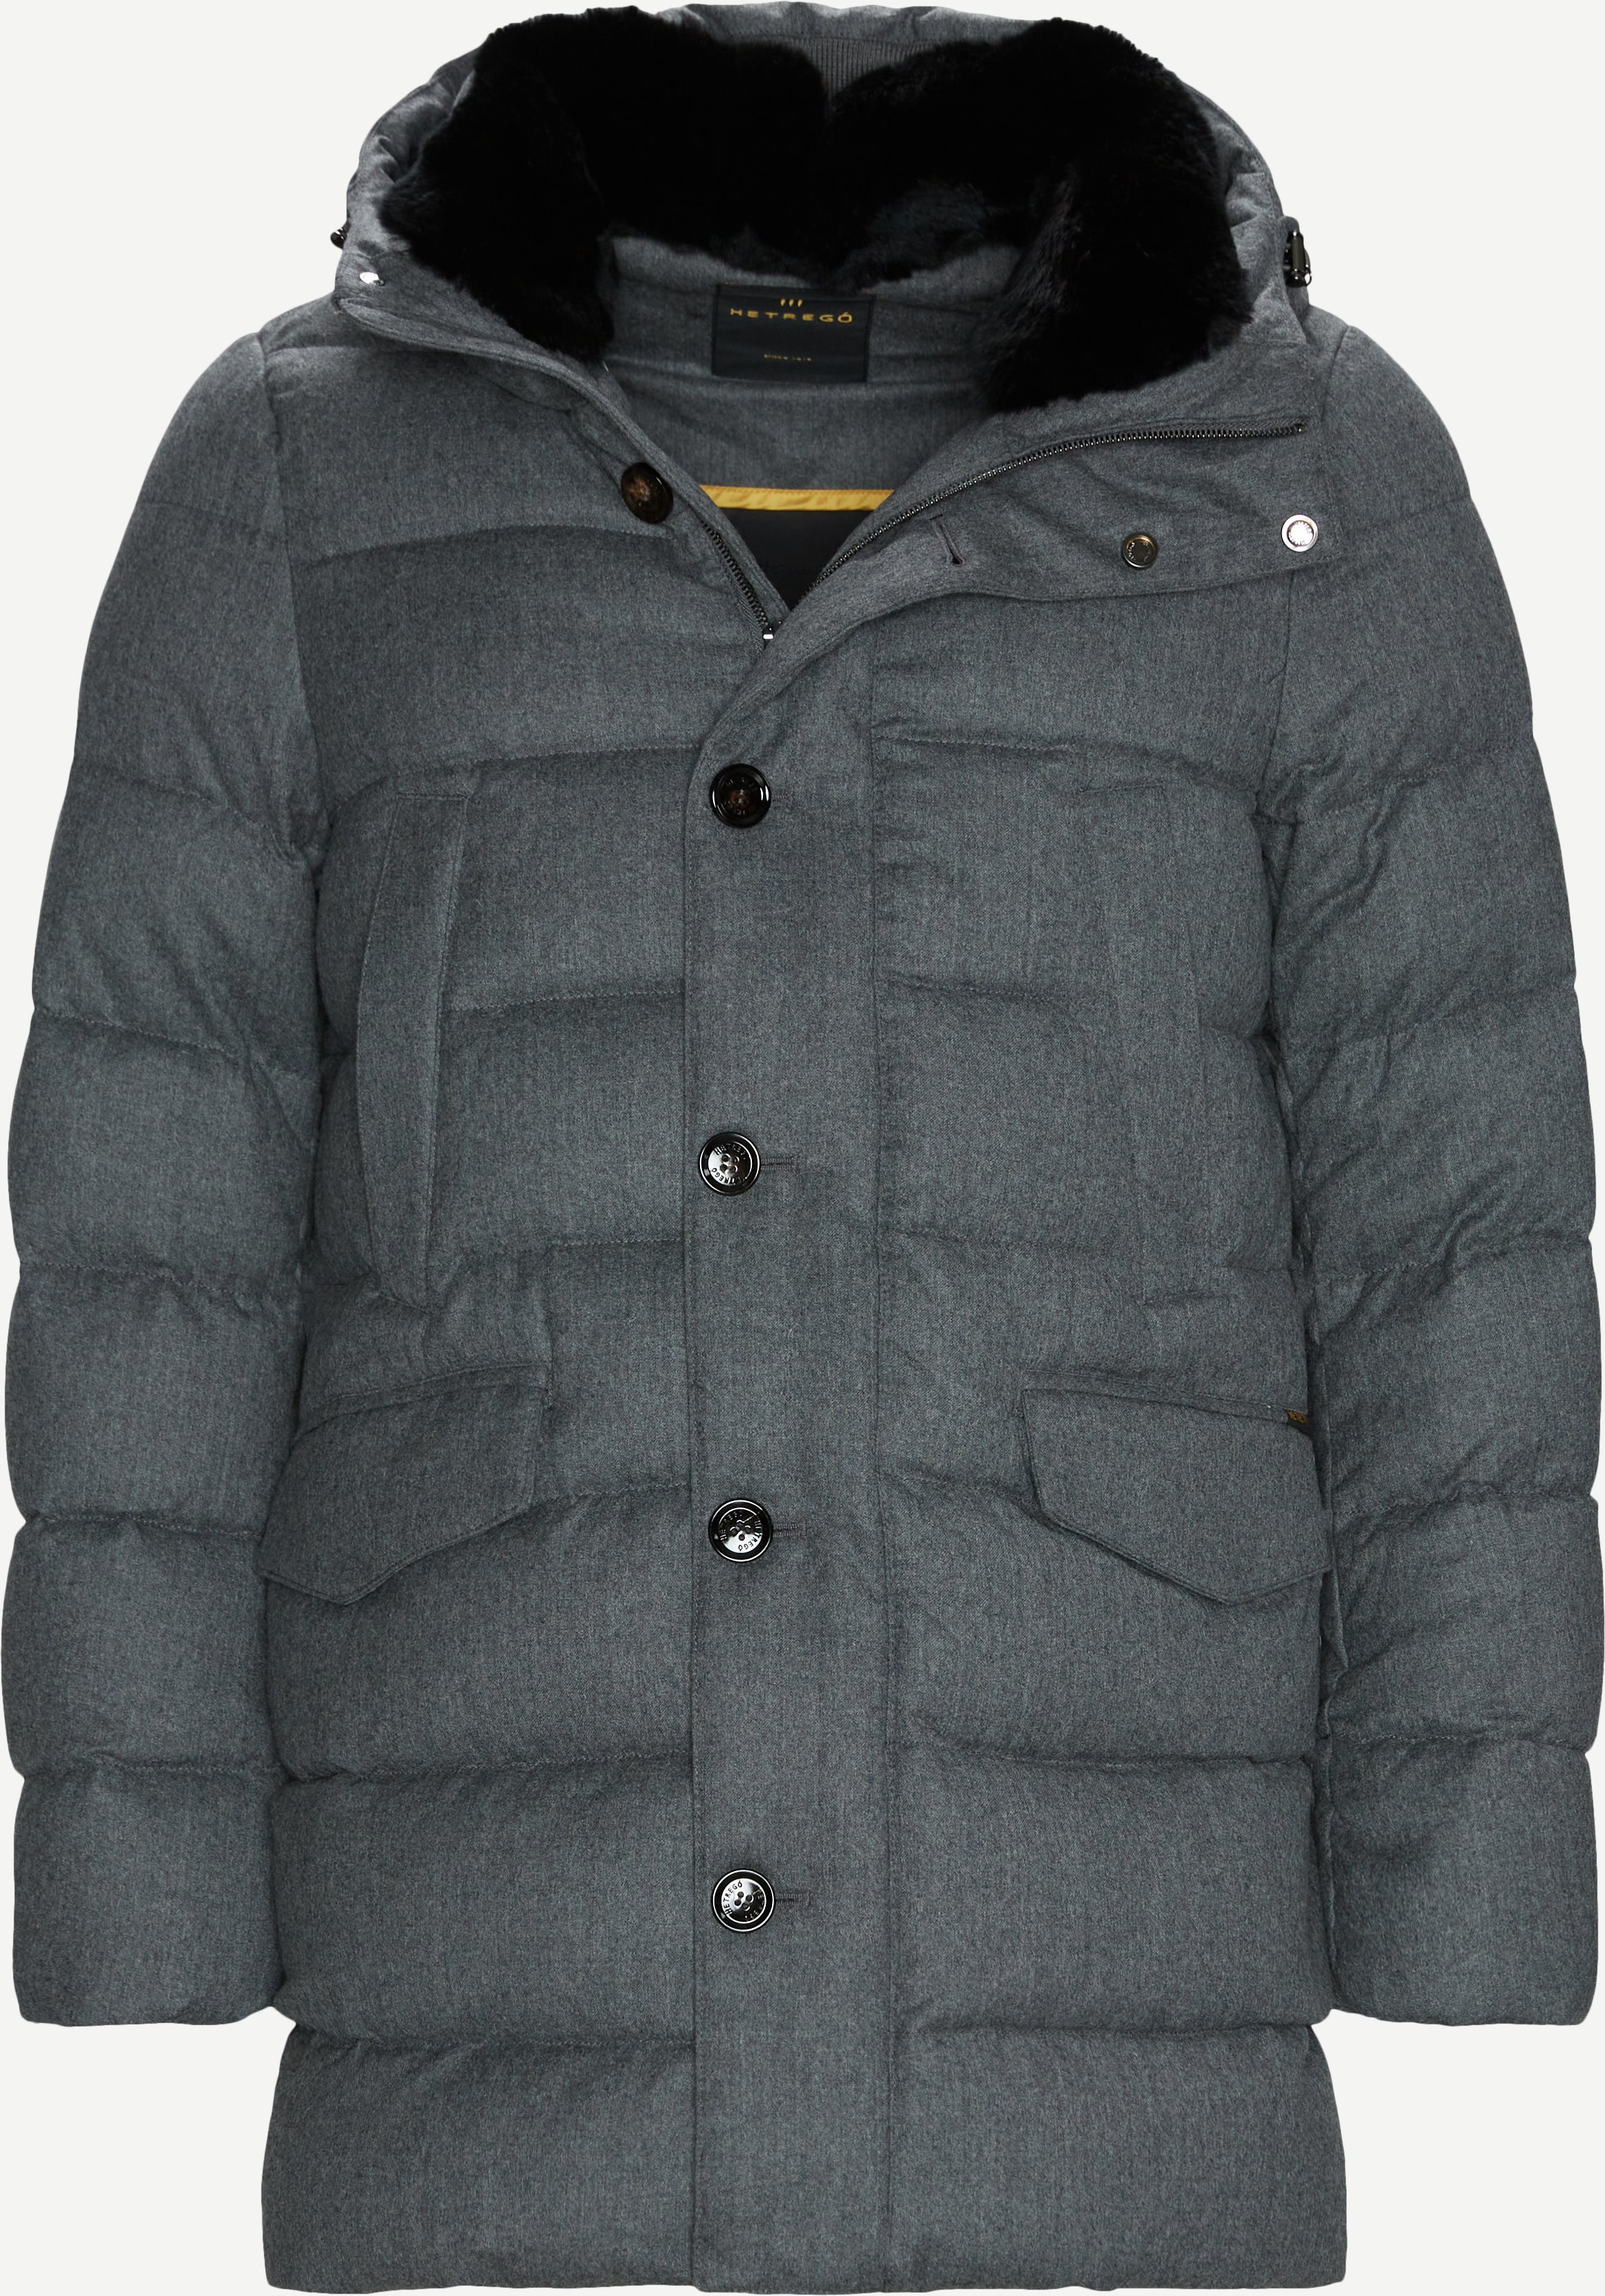 Joshua Winter Jacket - Jackets - Regular fit - Grey